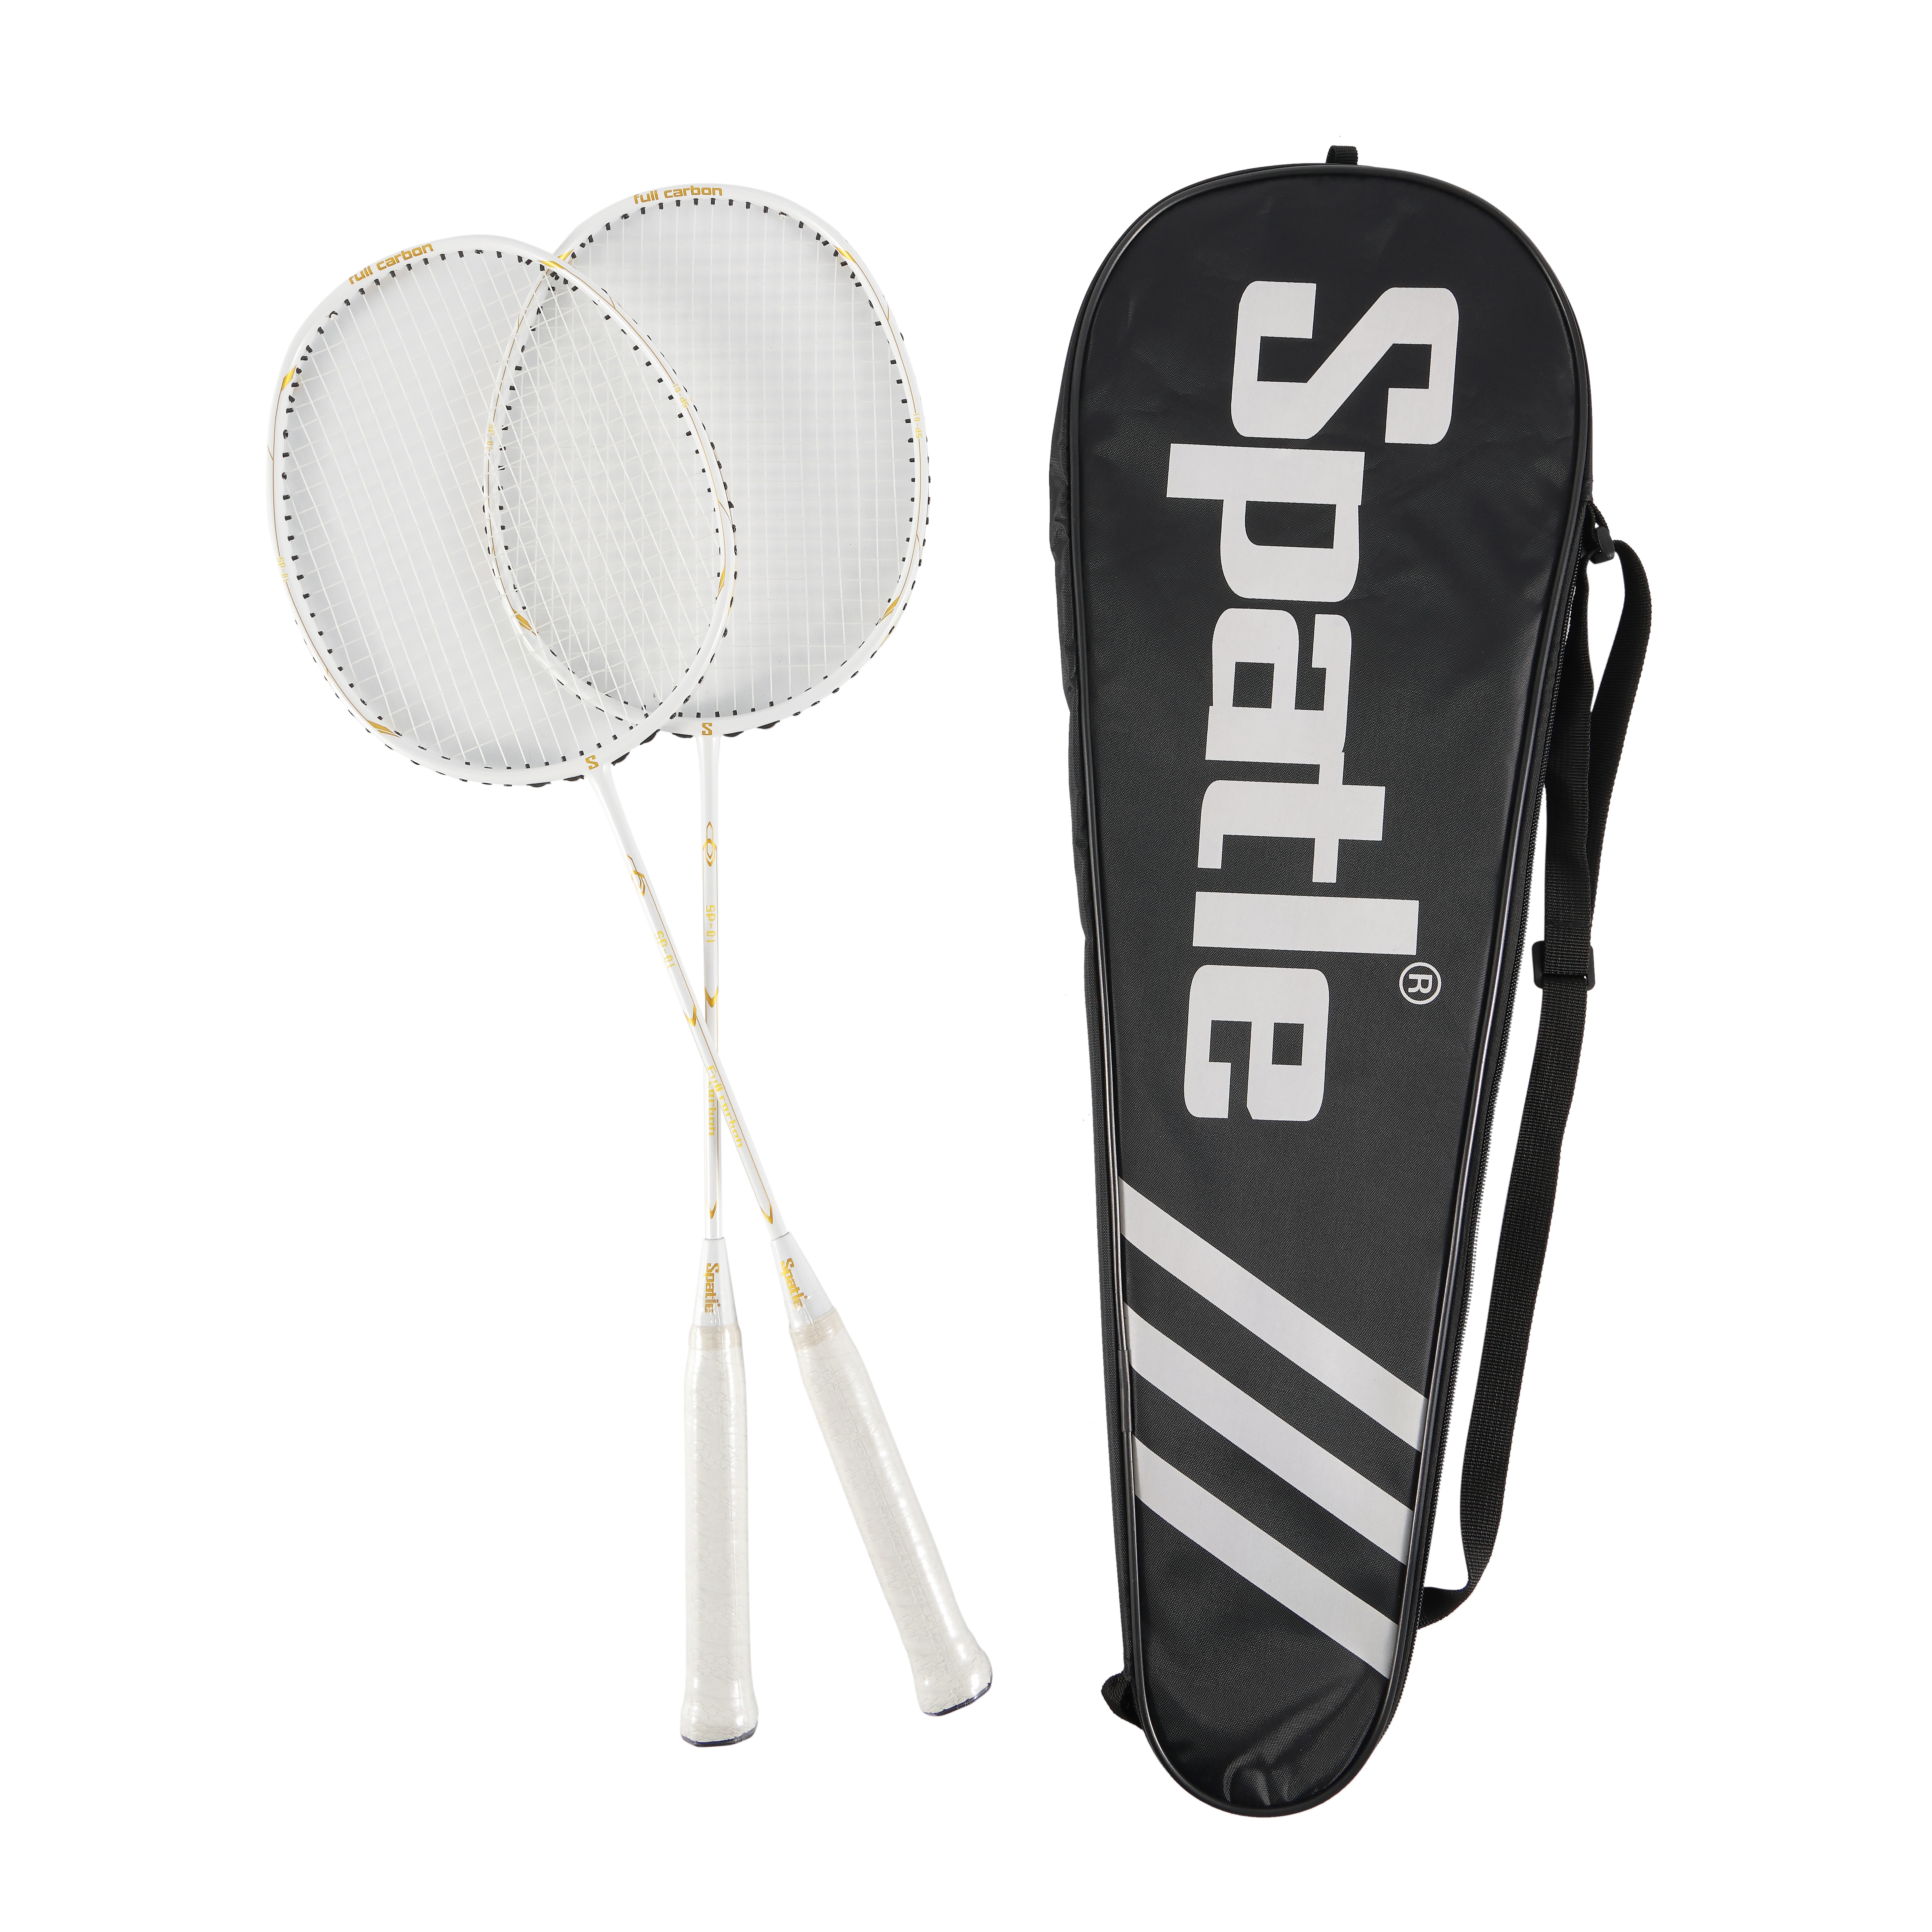 Elegir la raqueta de bádminton adecuada para principiantes